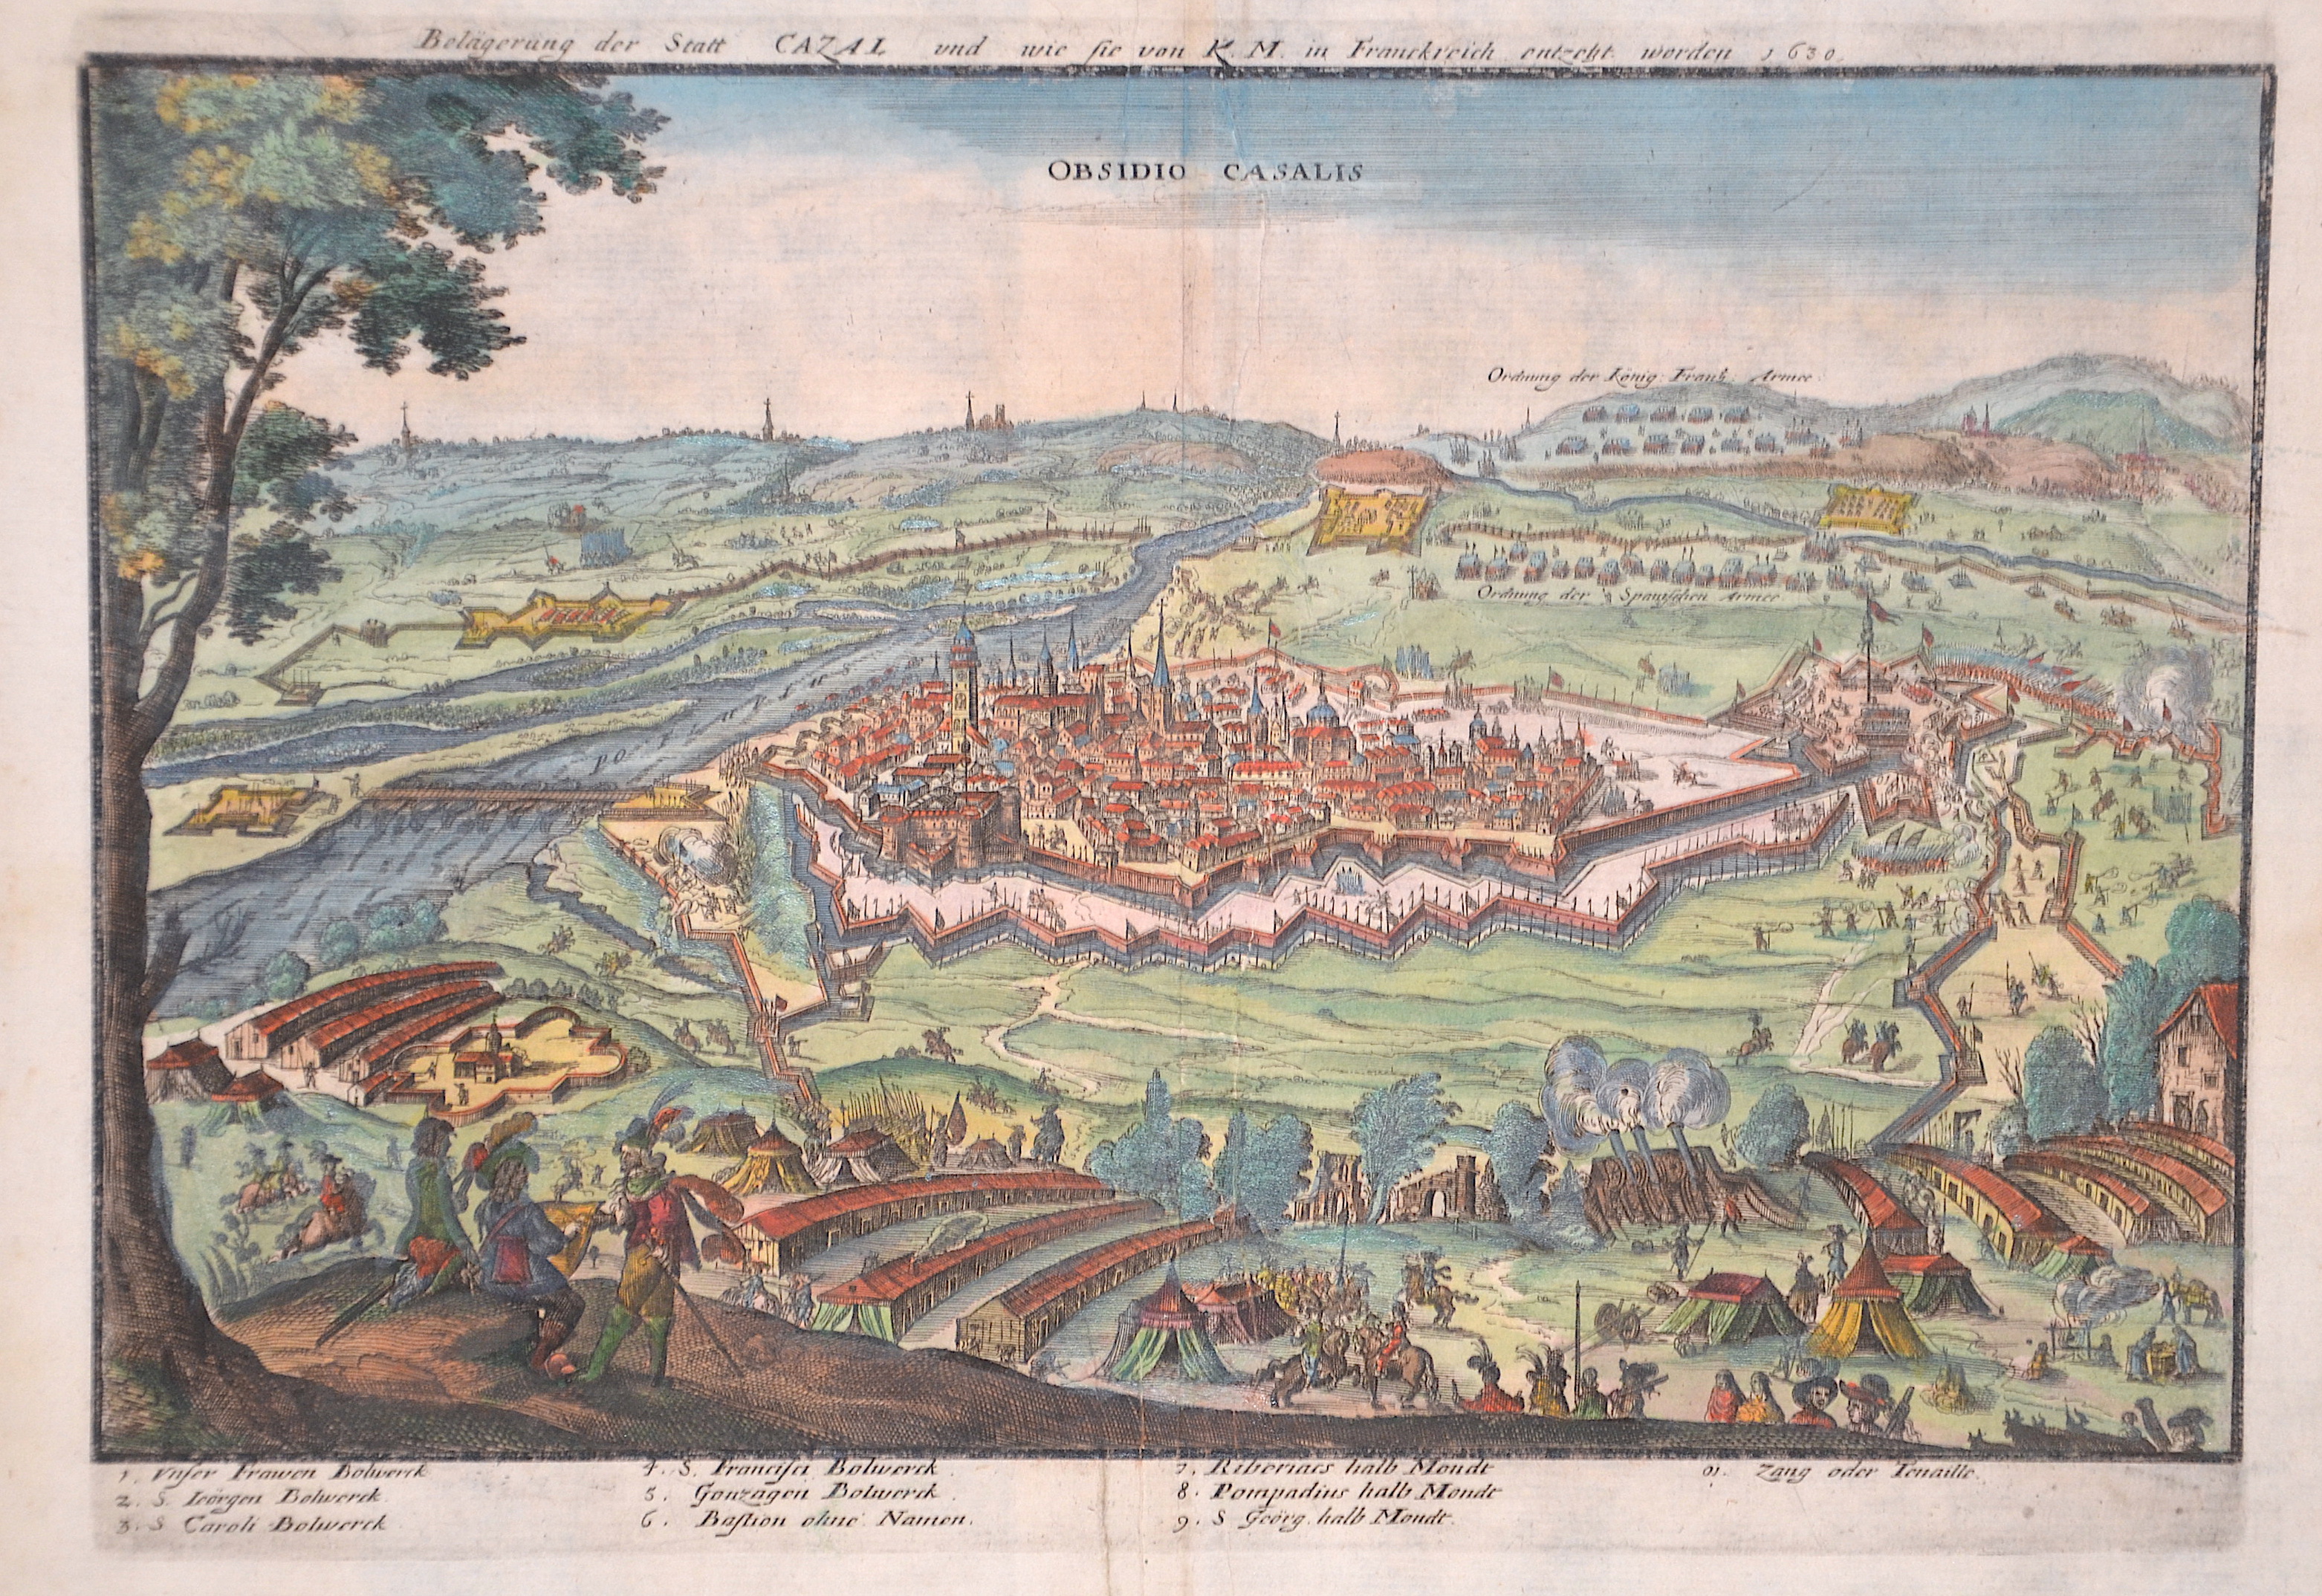 Merian Matthäus Belägerung der Statt Cazal und wie sie von K.M. in Frankreich entzetzt worden 1630